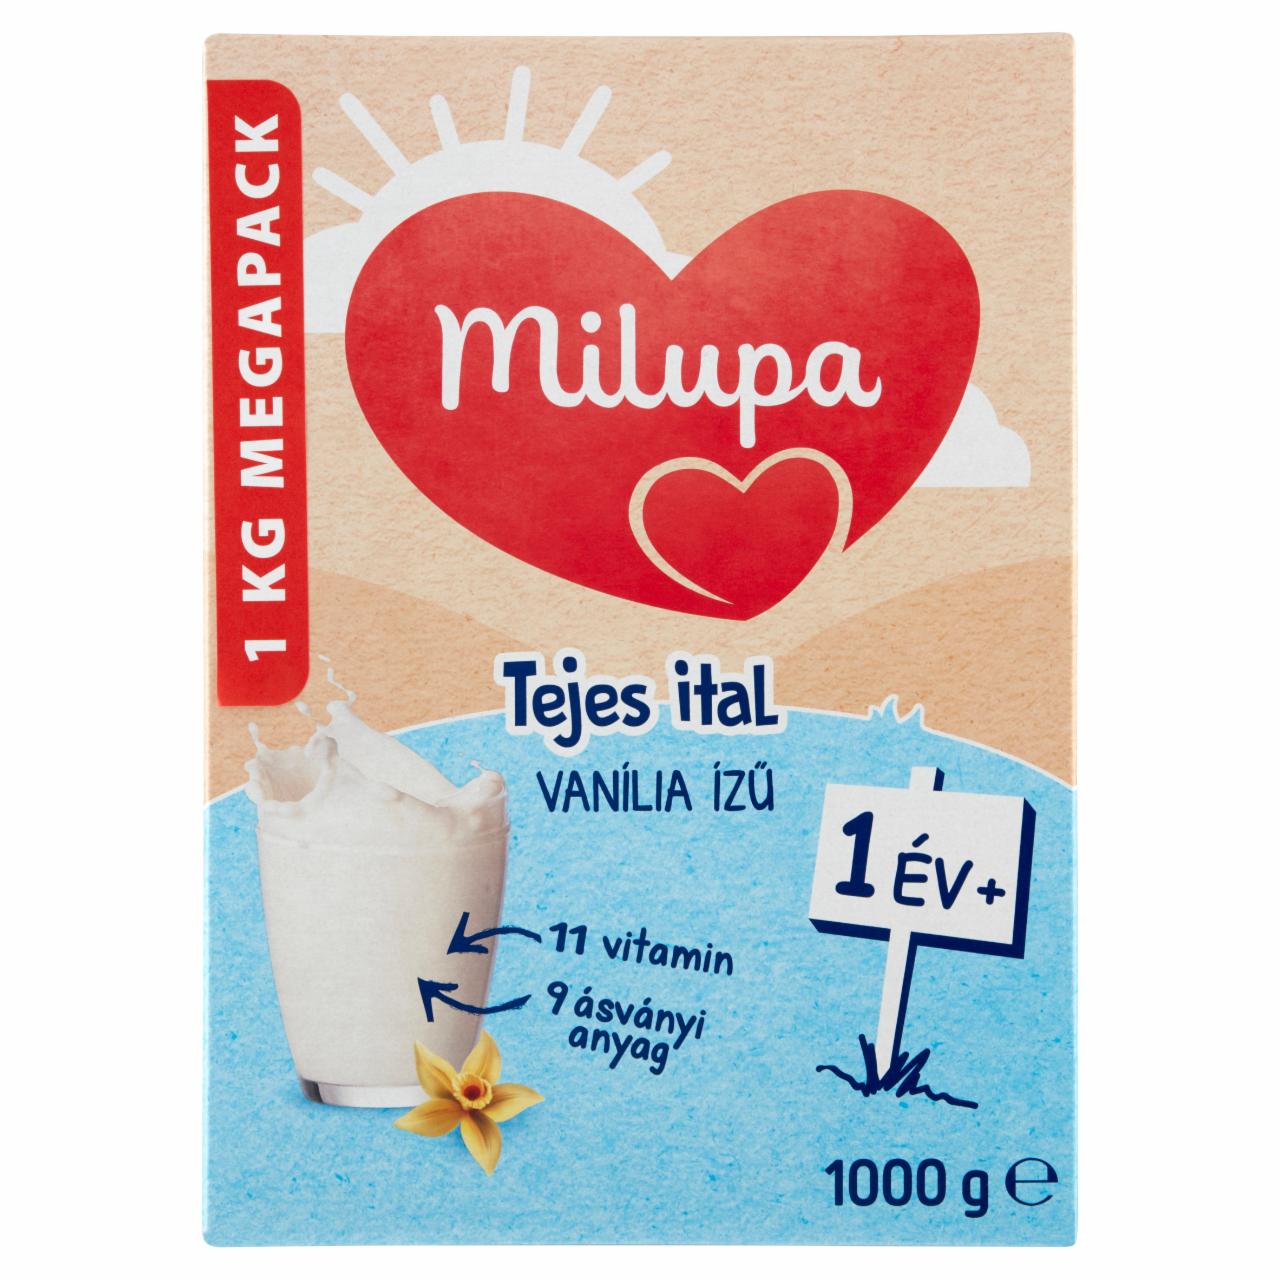 Képek - Milupa vaníliaízű tejes ital 12 hó+ 2 x 500 g (1000 g)